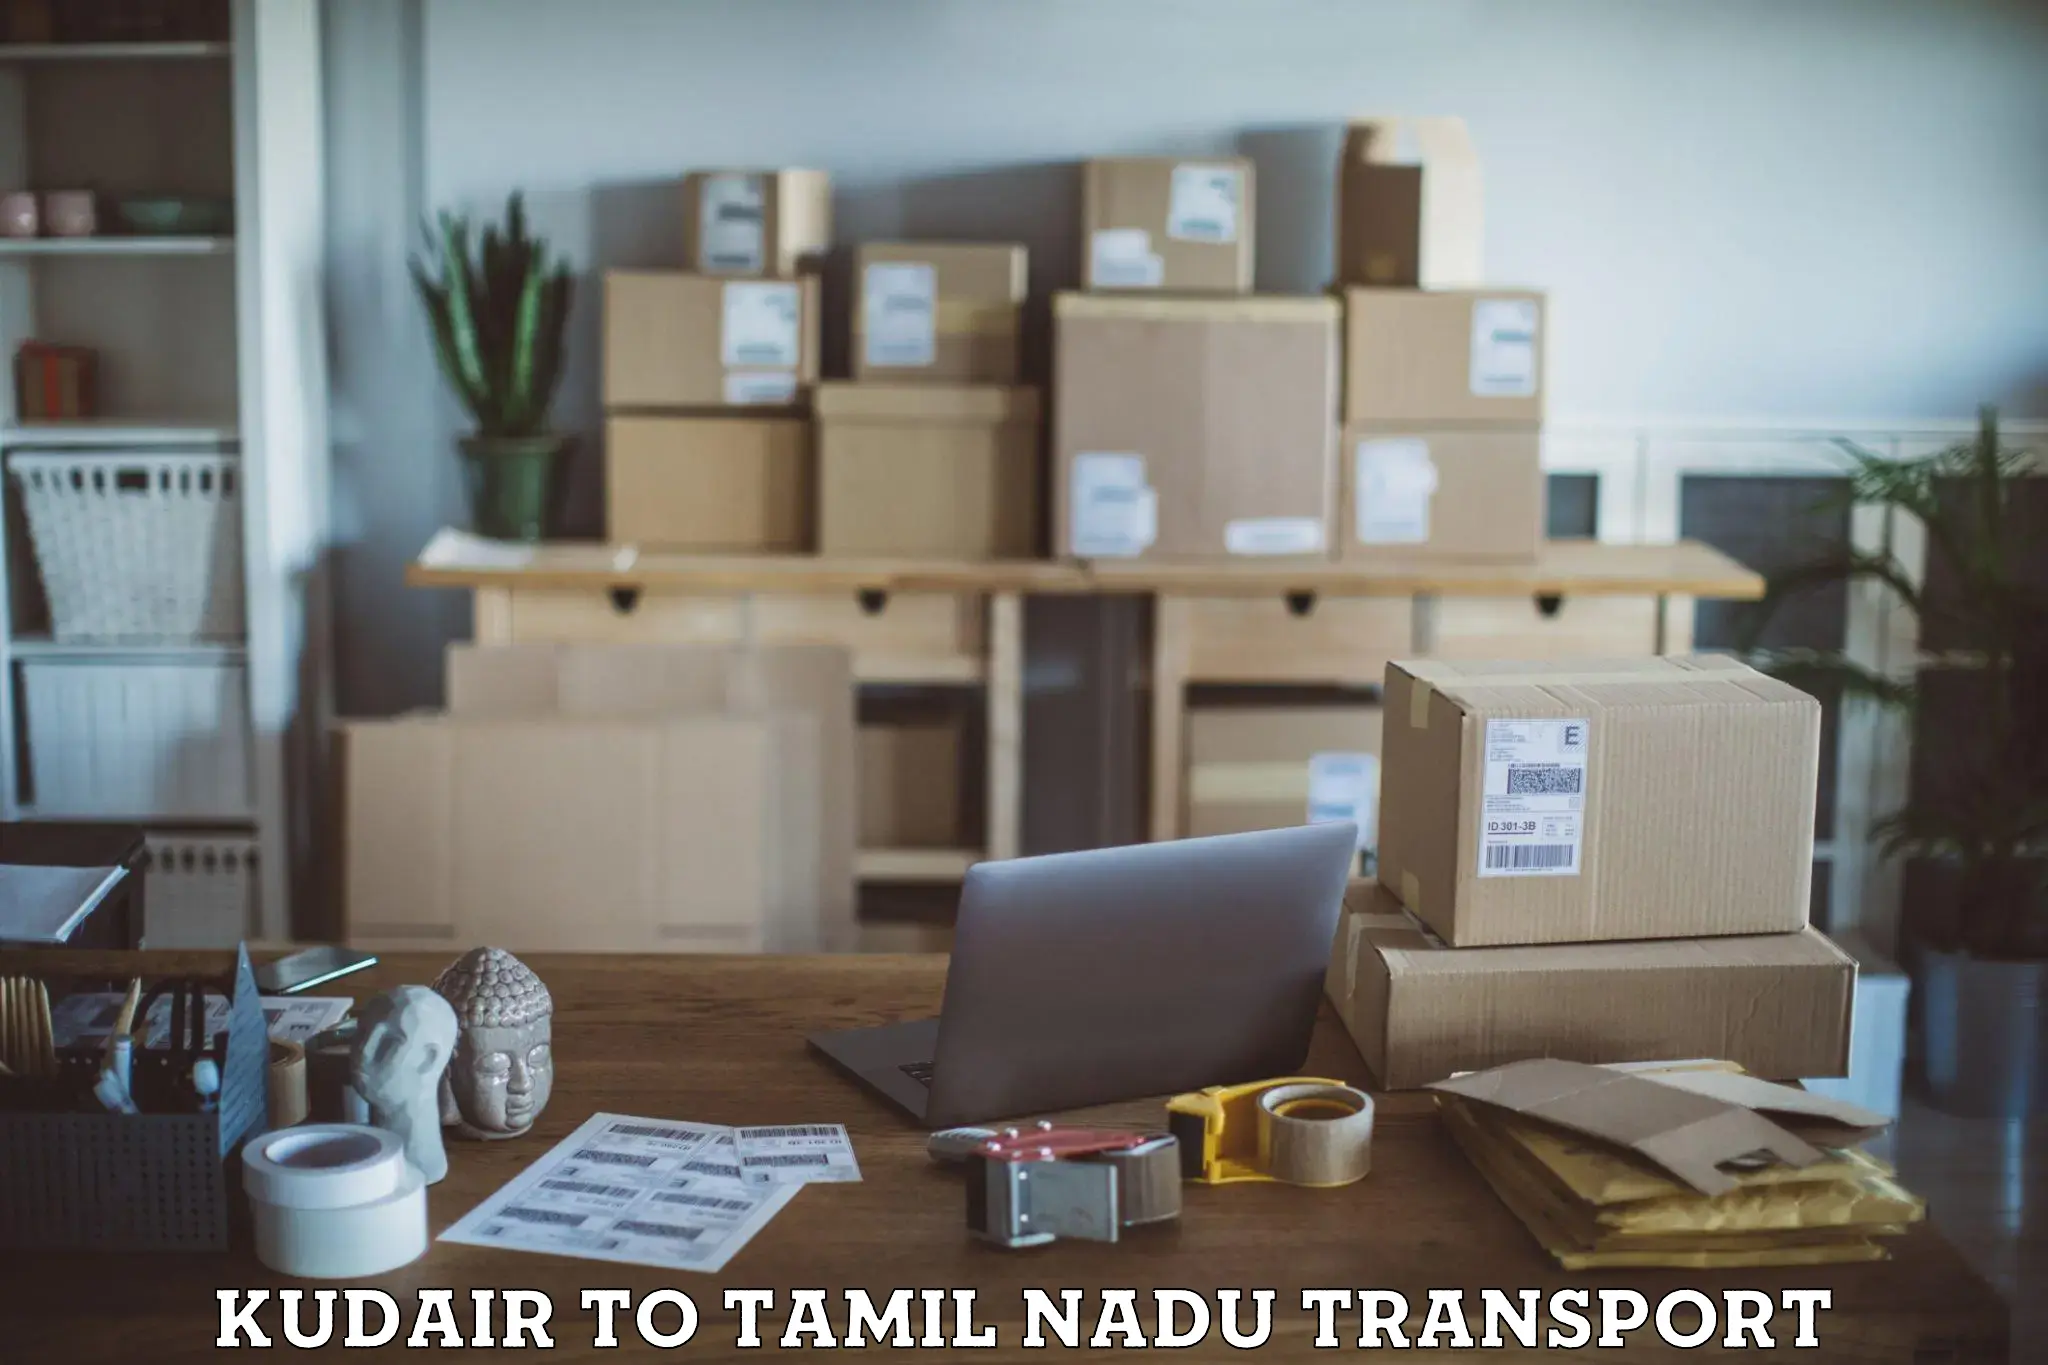 Parcel transport services Kudair to Tiruturaipundi